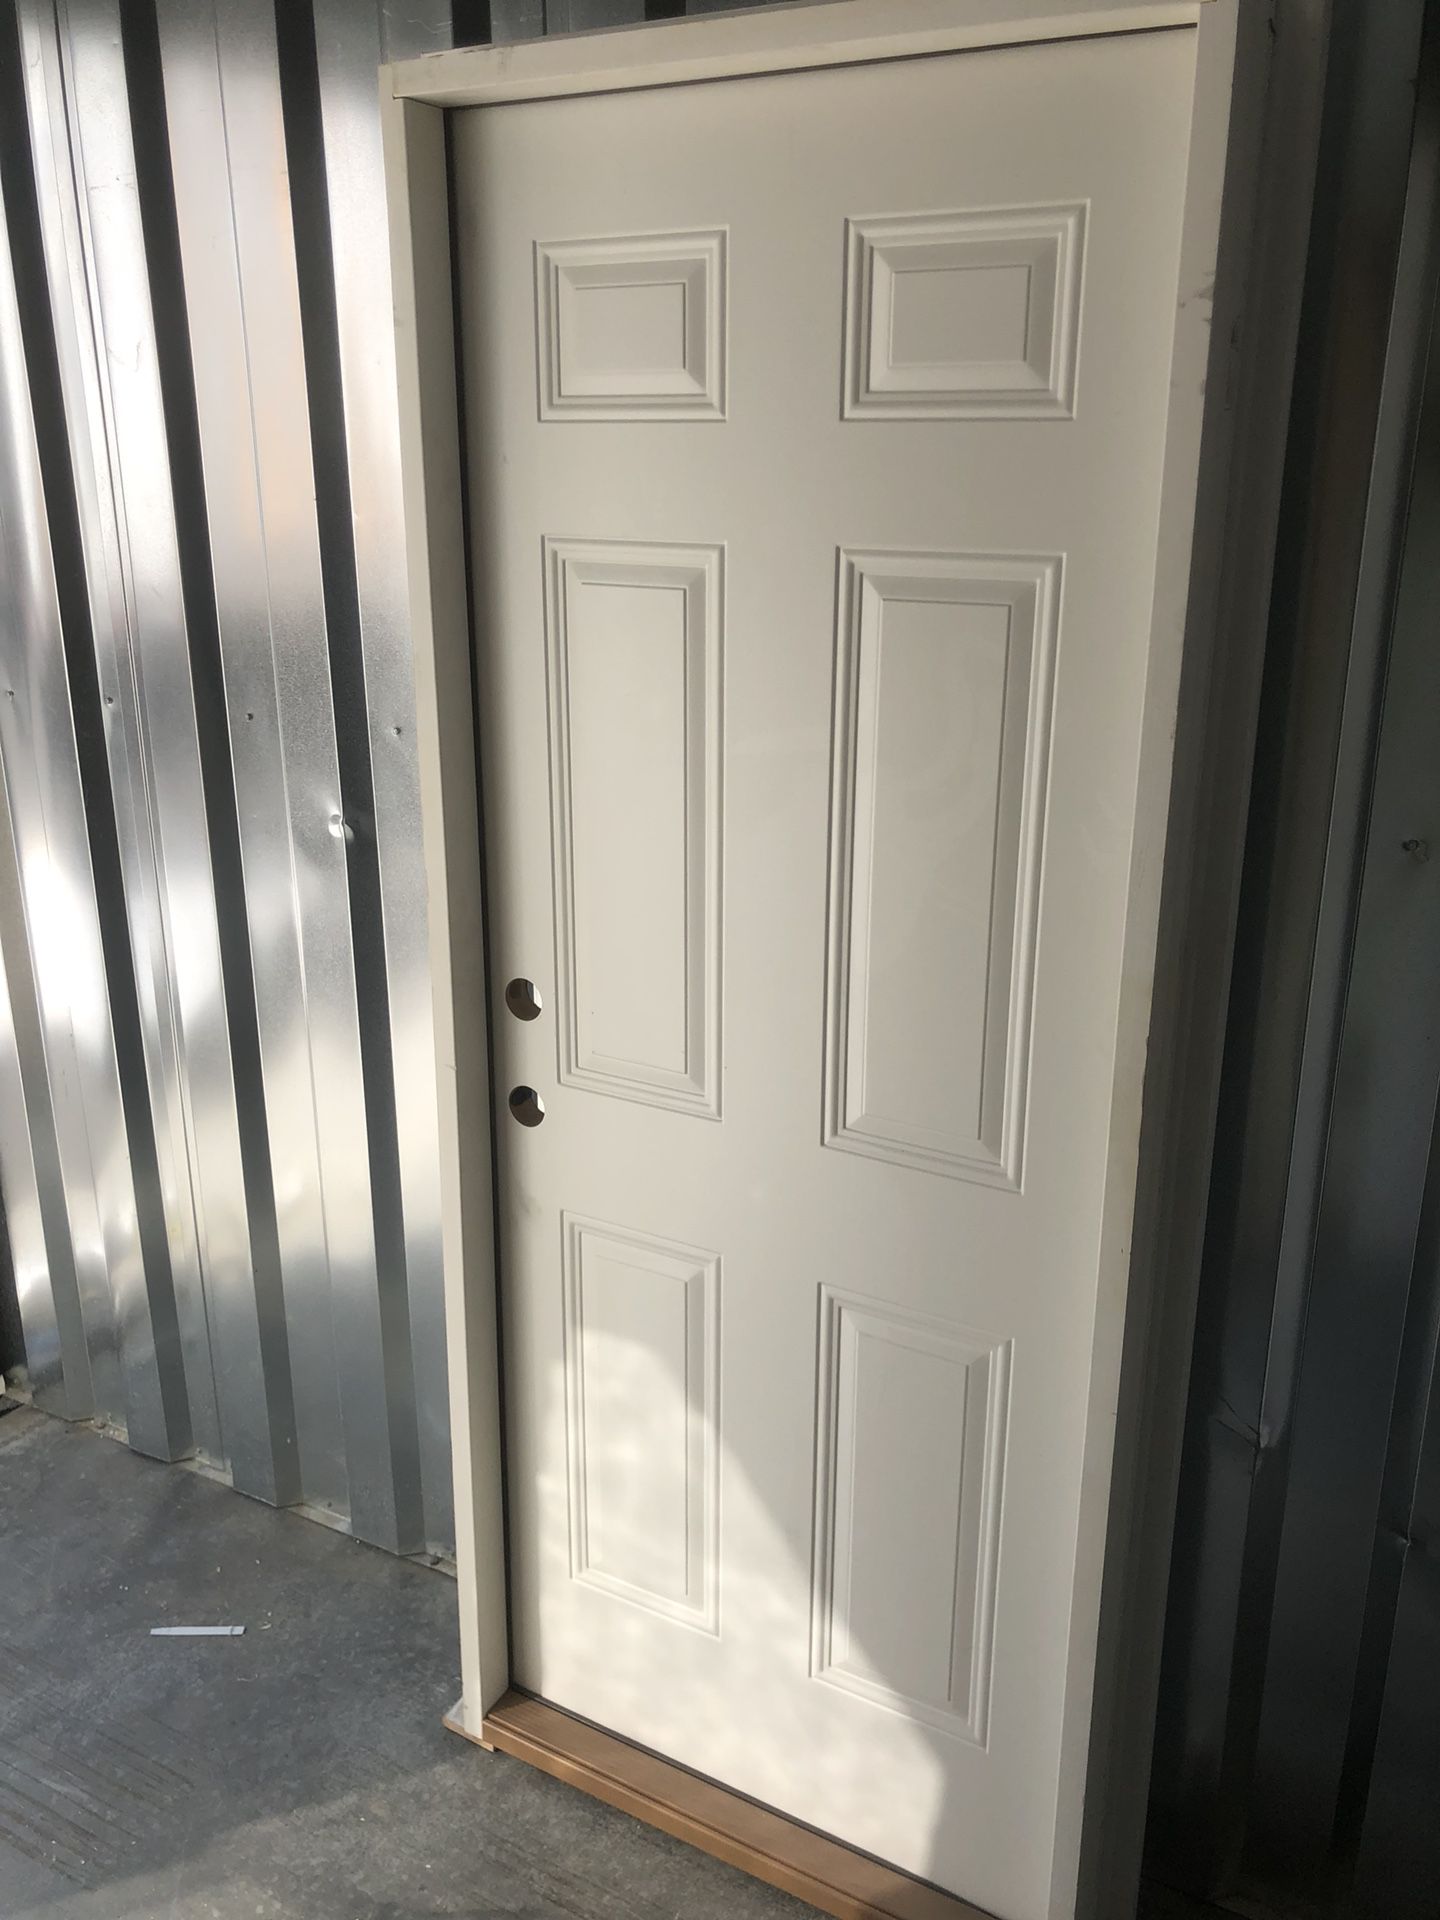 New Prehung Exterior Doors